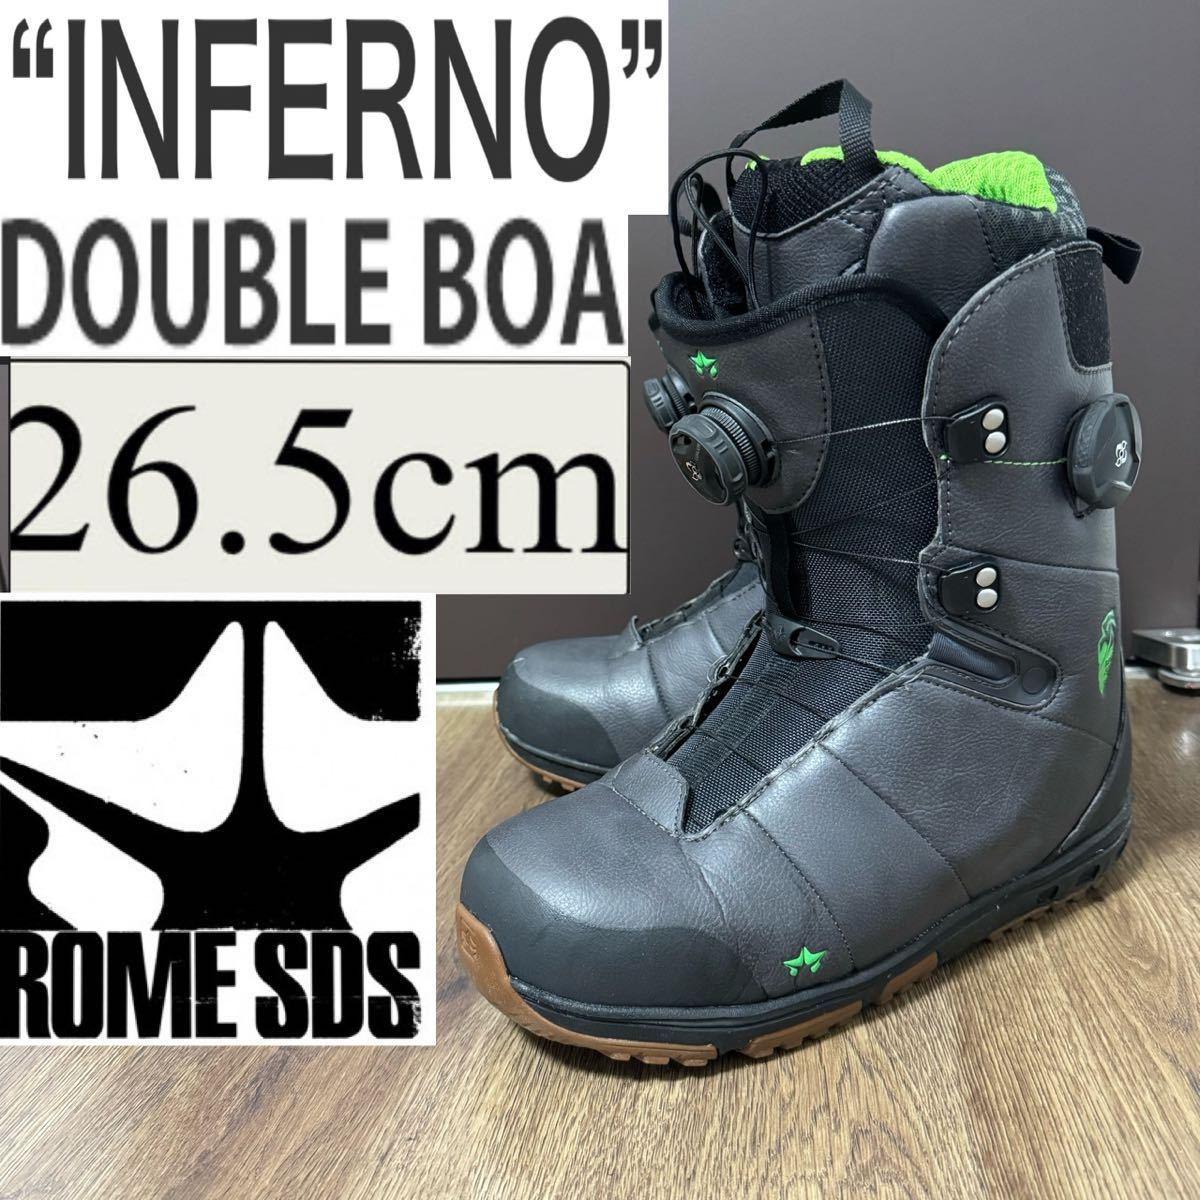 ROME SDS ローム INFERNO インフェルノ ダブルボア DOUBLE BOA ダブルBOA スノーボードブーツ ブーツ 靴 スノーボード スノボ 26.5 26.5cm